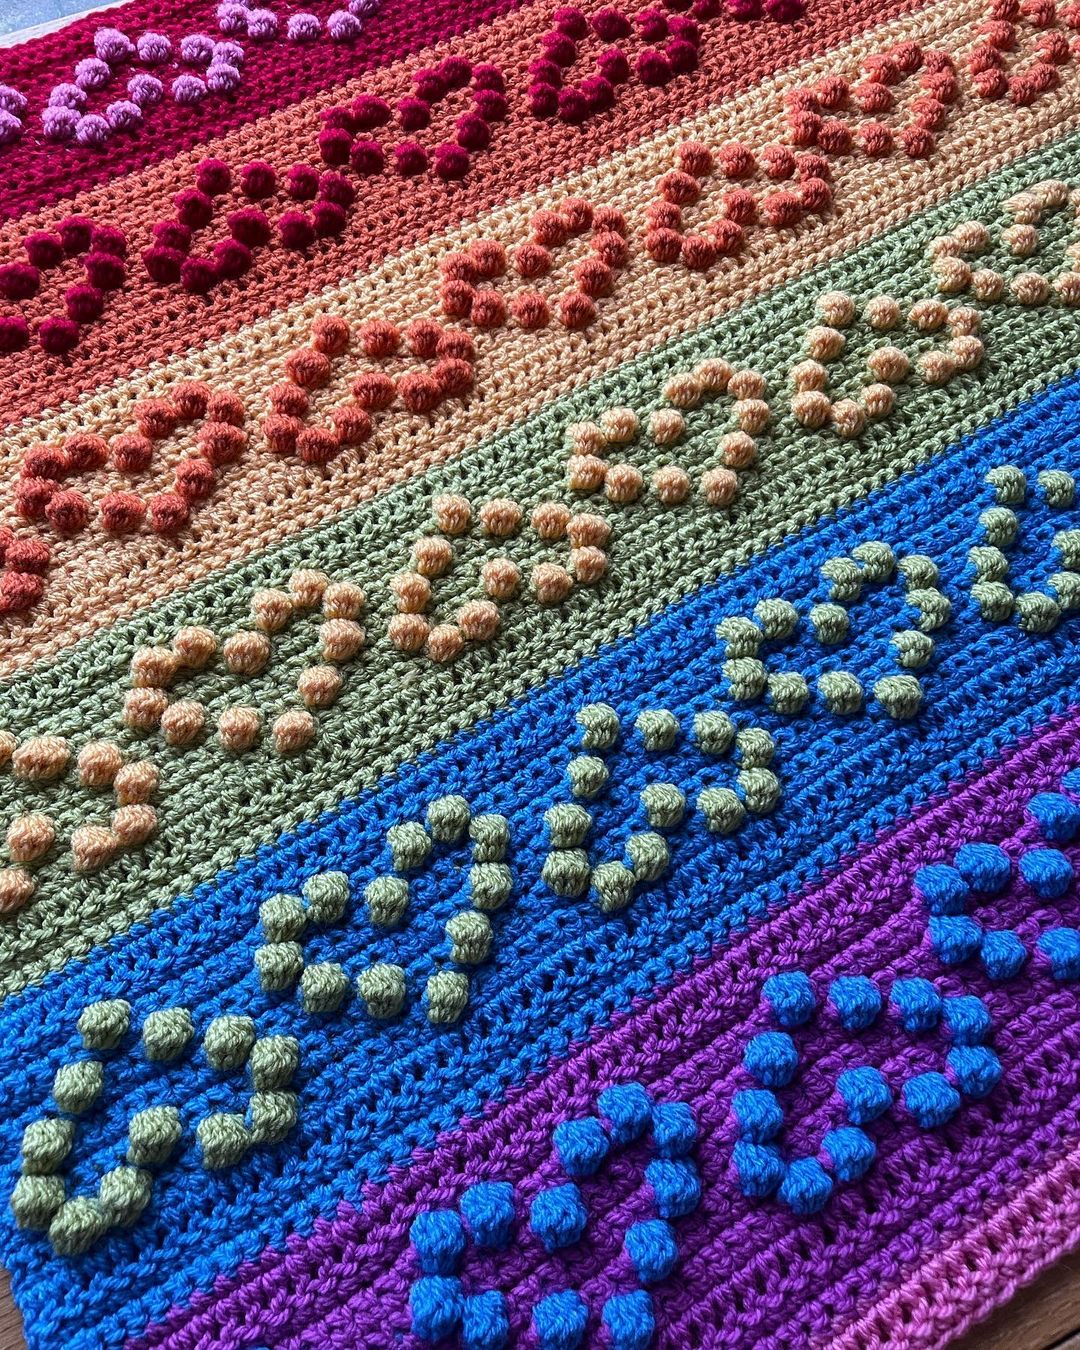 crochet heart bauble blanket pattern by Melu Crochet